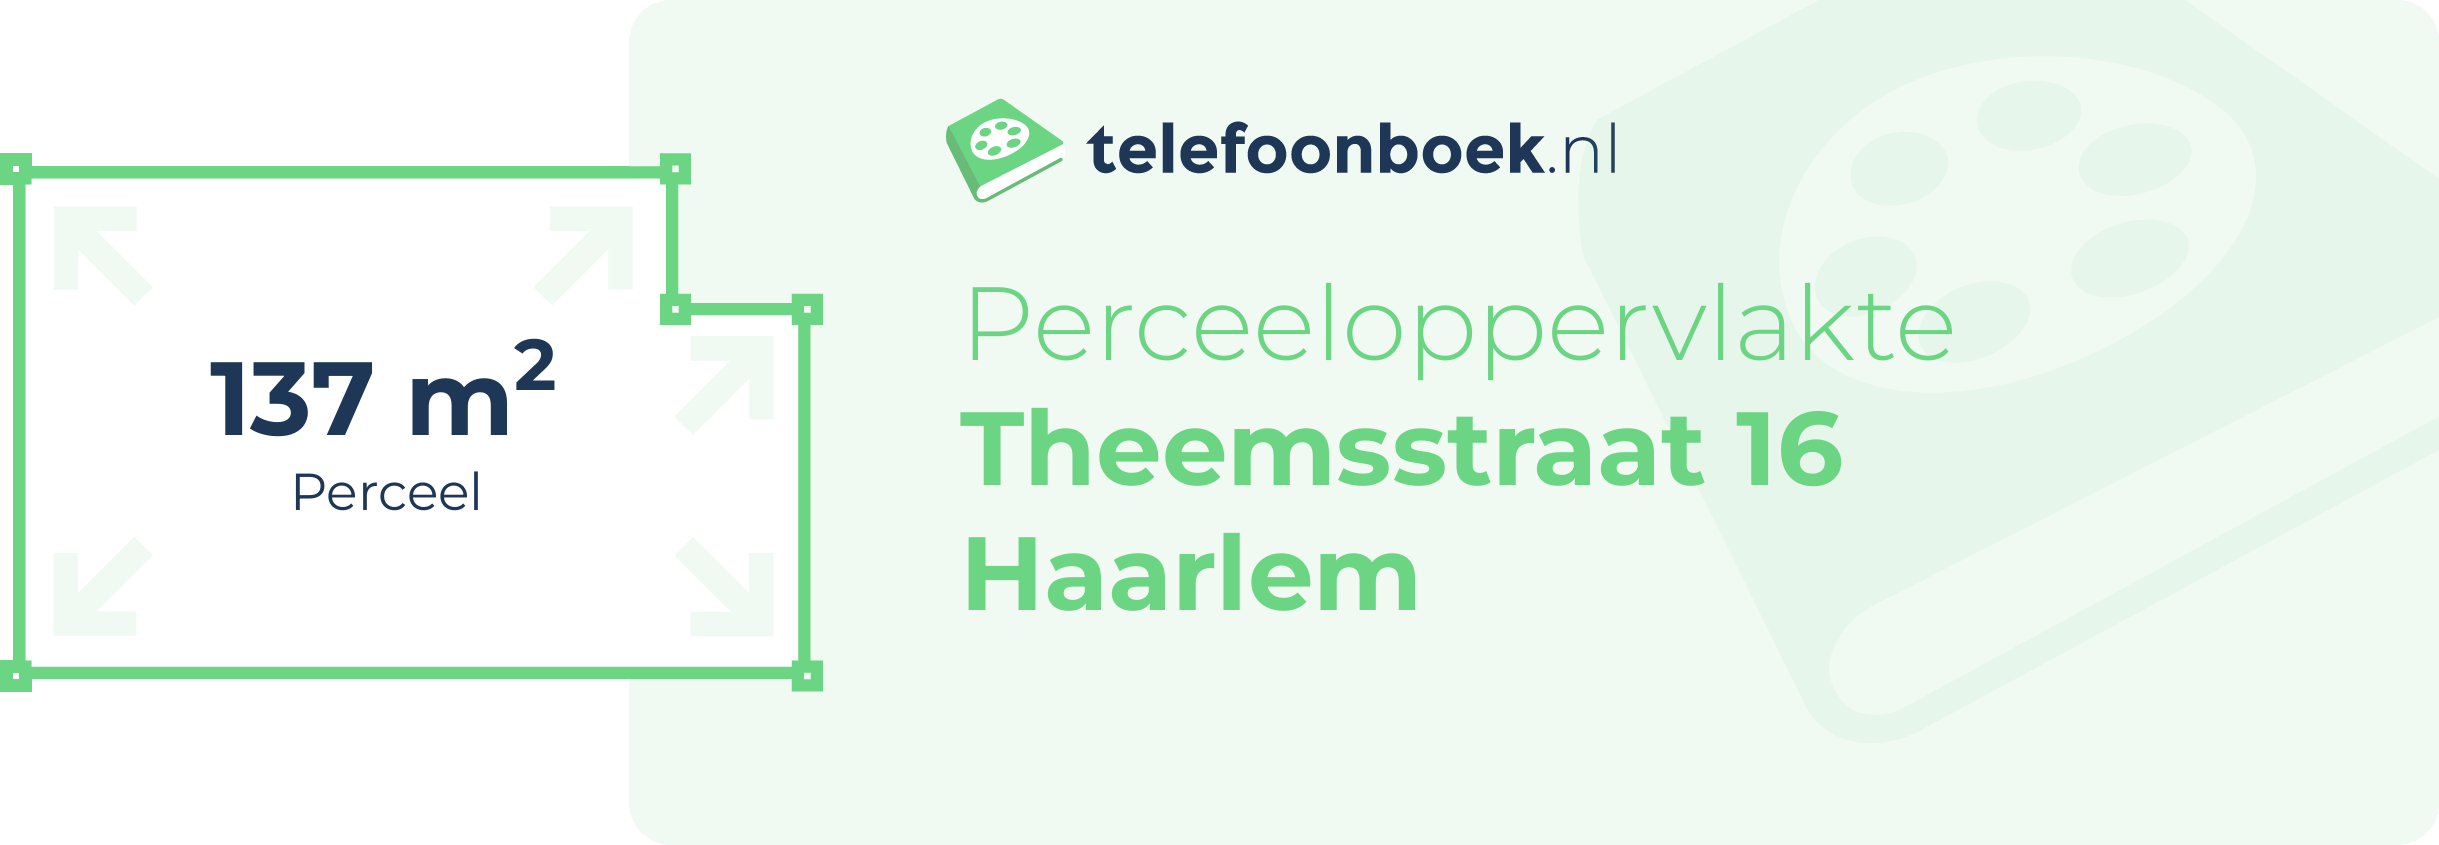 Perceeloppervlakte Theemsstraat 16 Haarlem